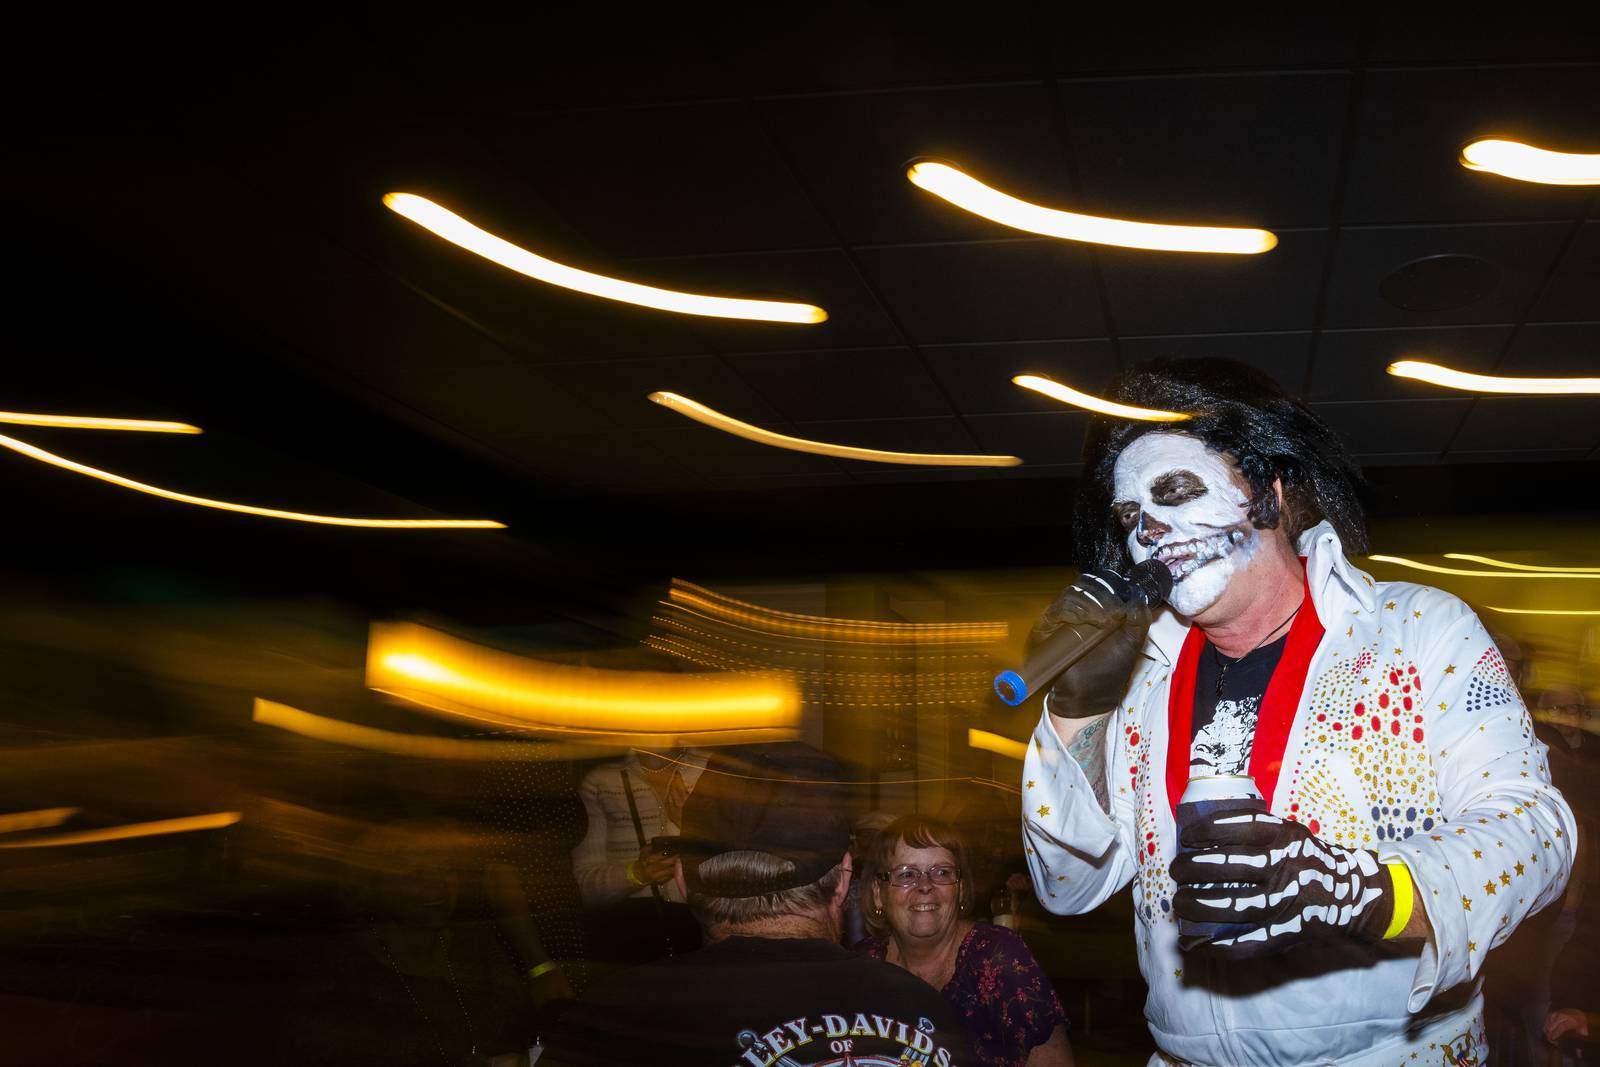 Skelvis performs dressed as a skeleton Elvis.